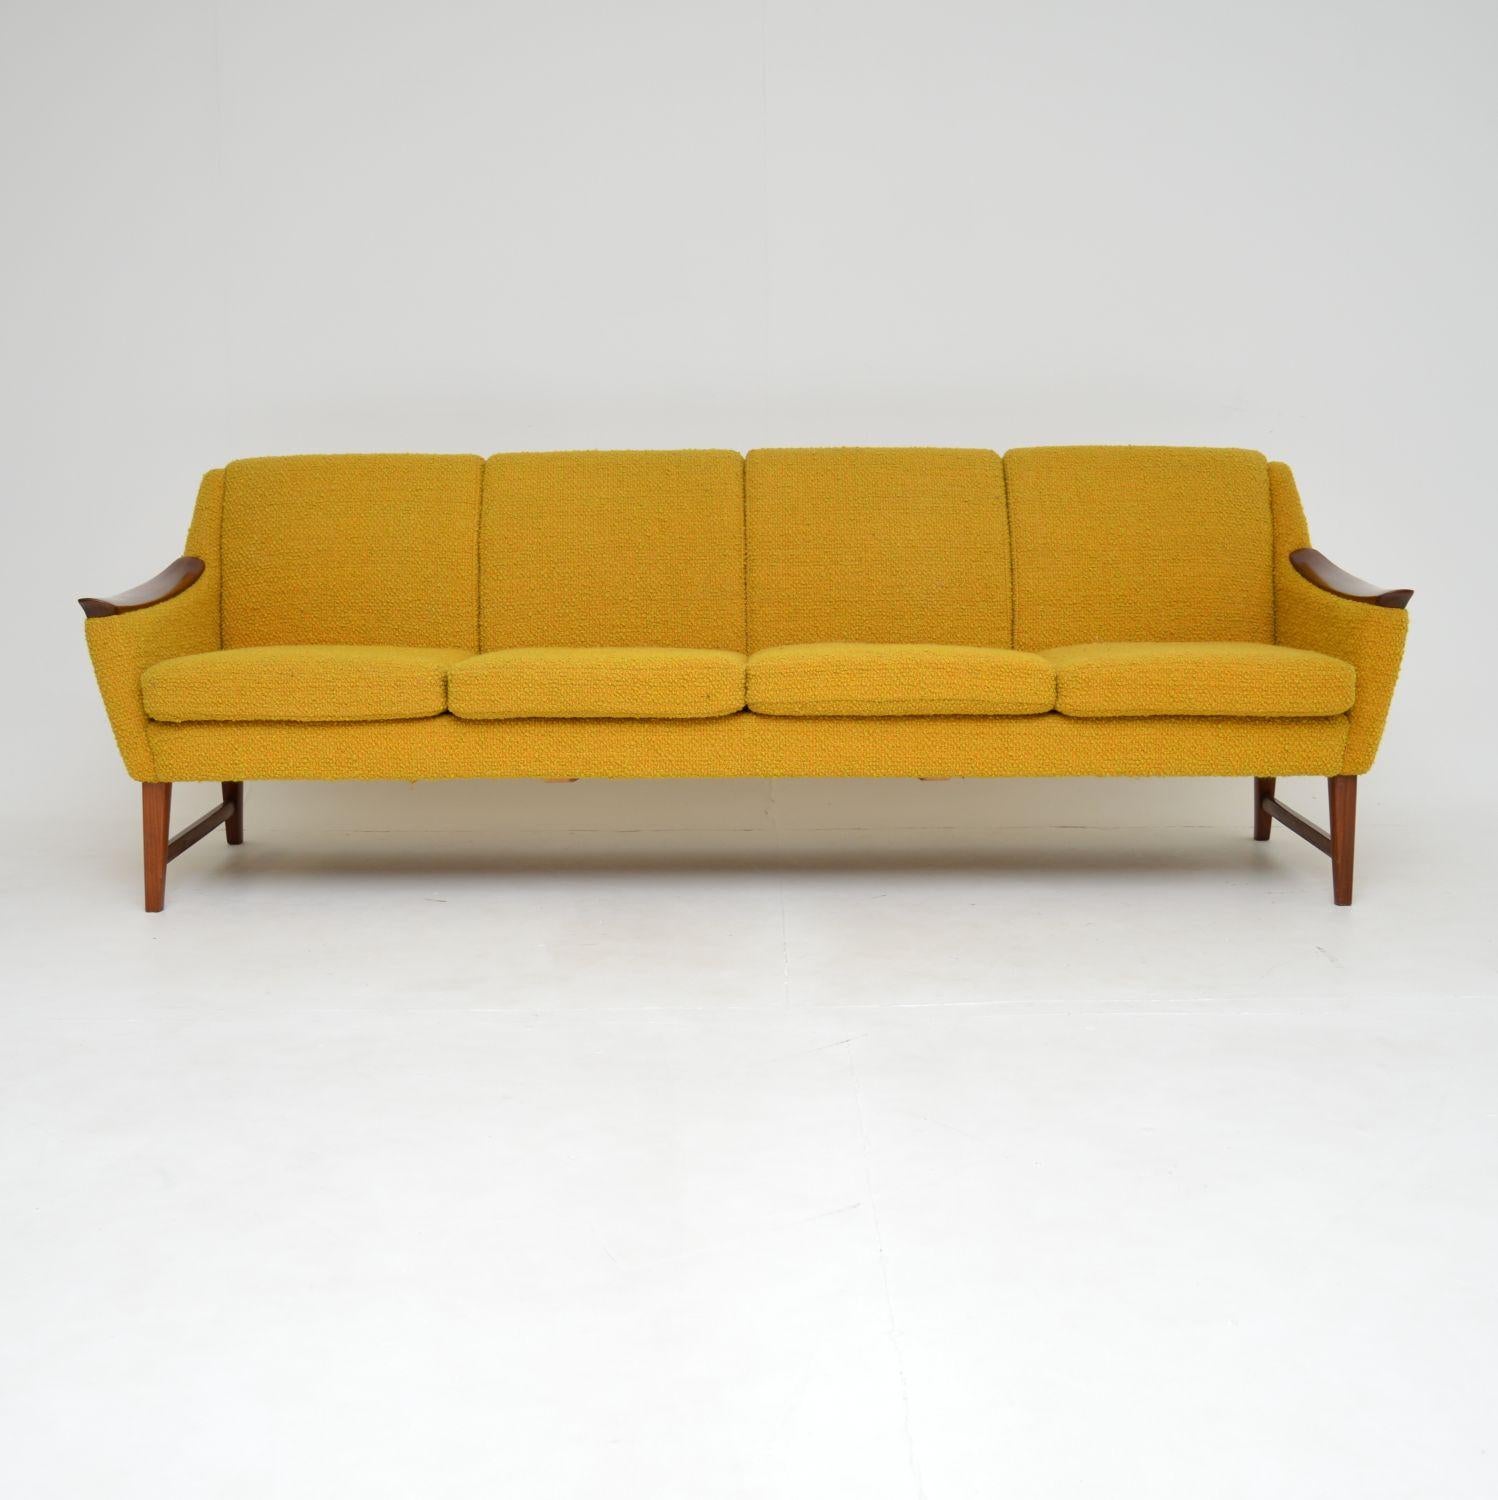 Mid-Century Modern 1960's Norwegian Vintage Teak Sofa in Mustard Yellow Boucle